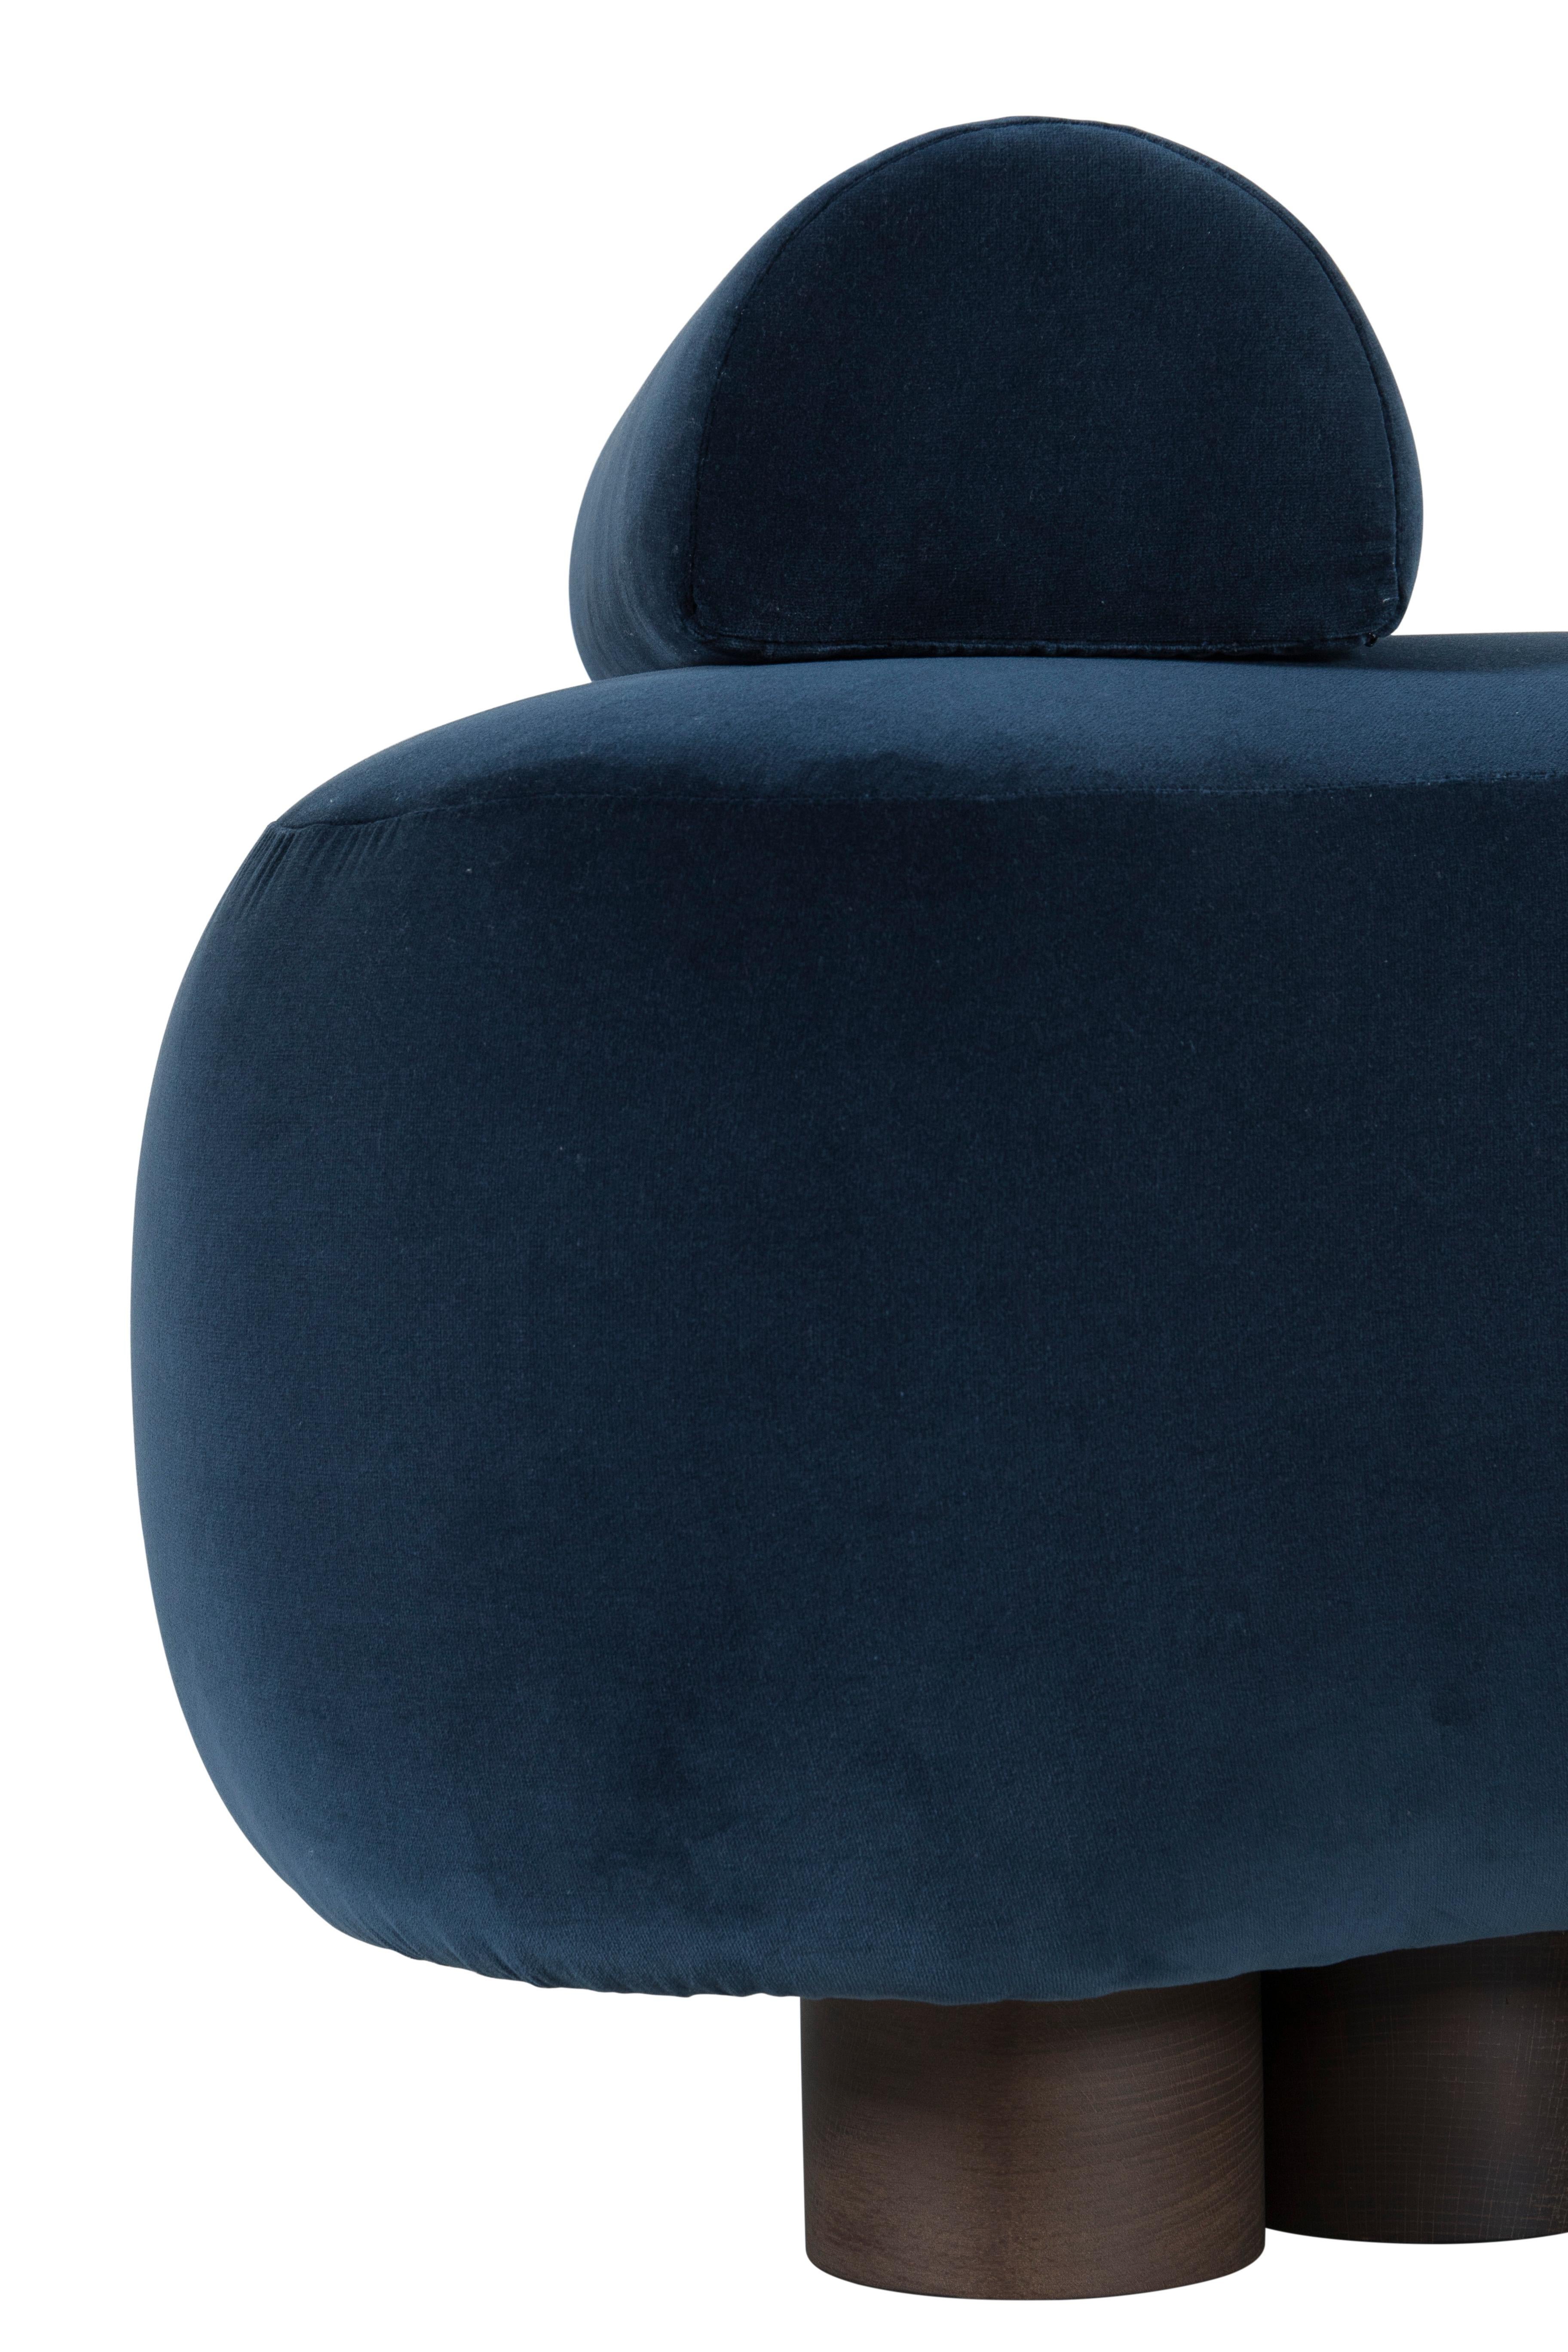 Contemporary Modern Minho Day Bed. DEDAR Dark Blue Velvet, Handmade in Portugal by Greenapple For Sale